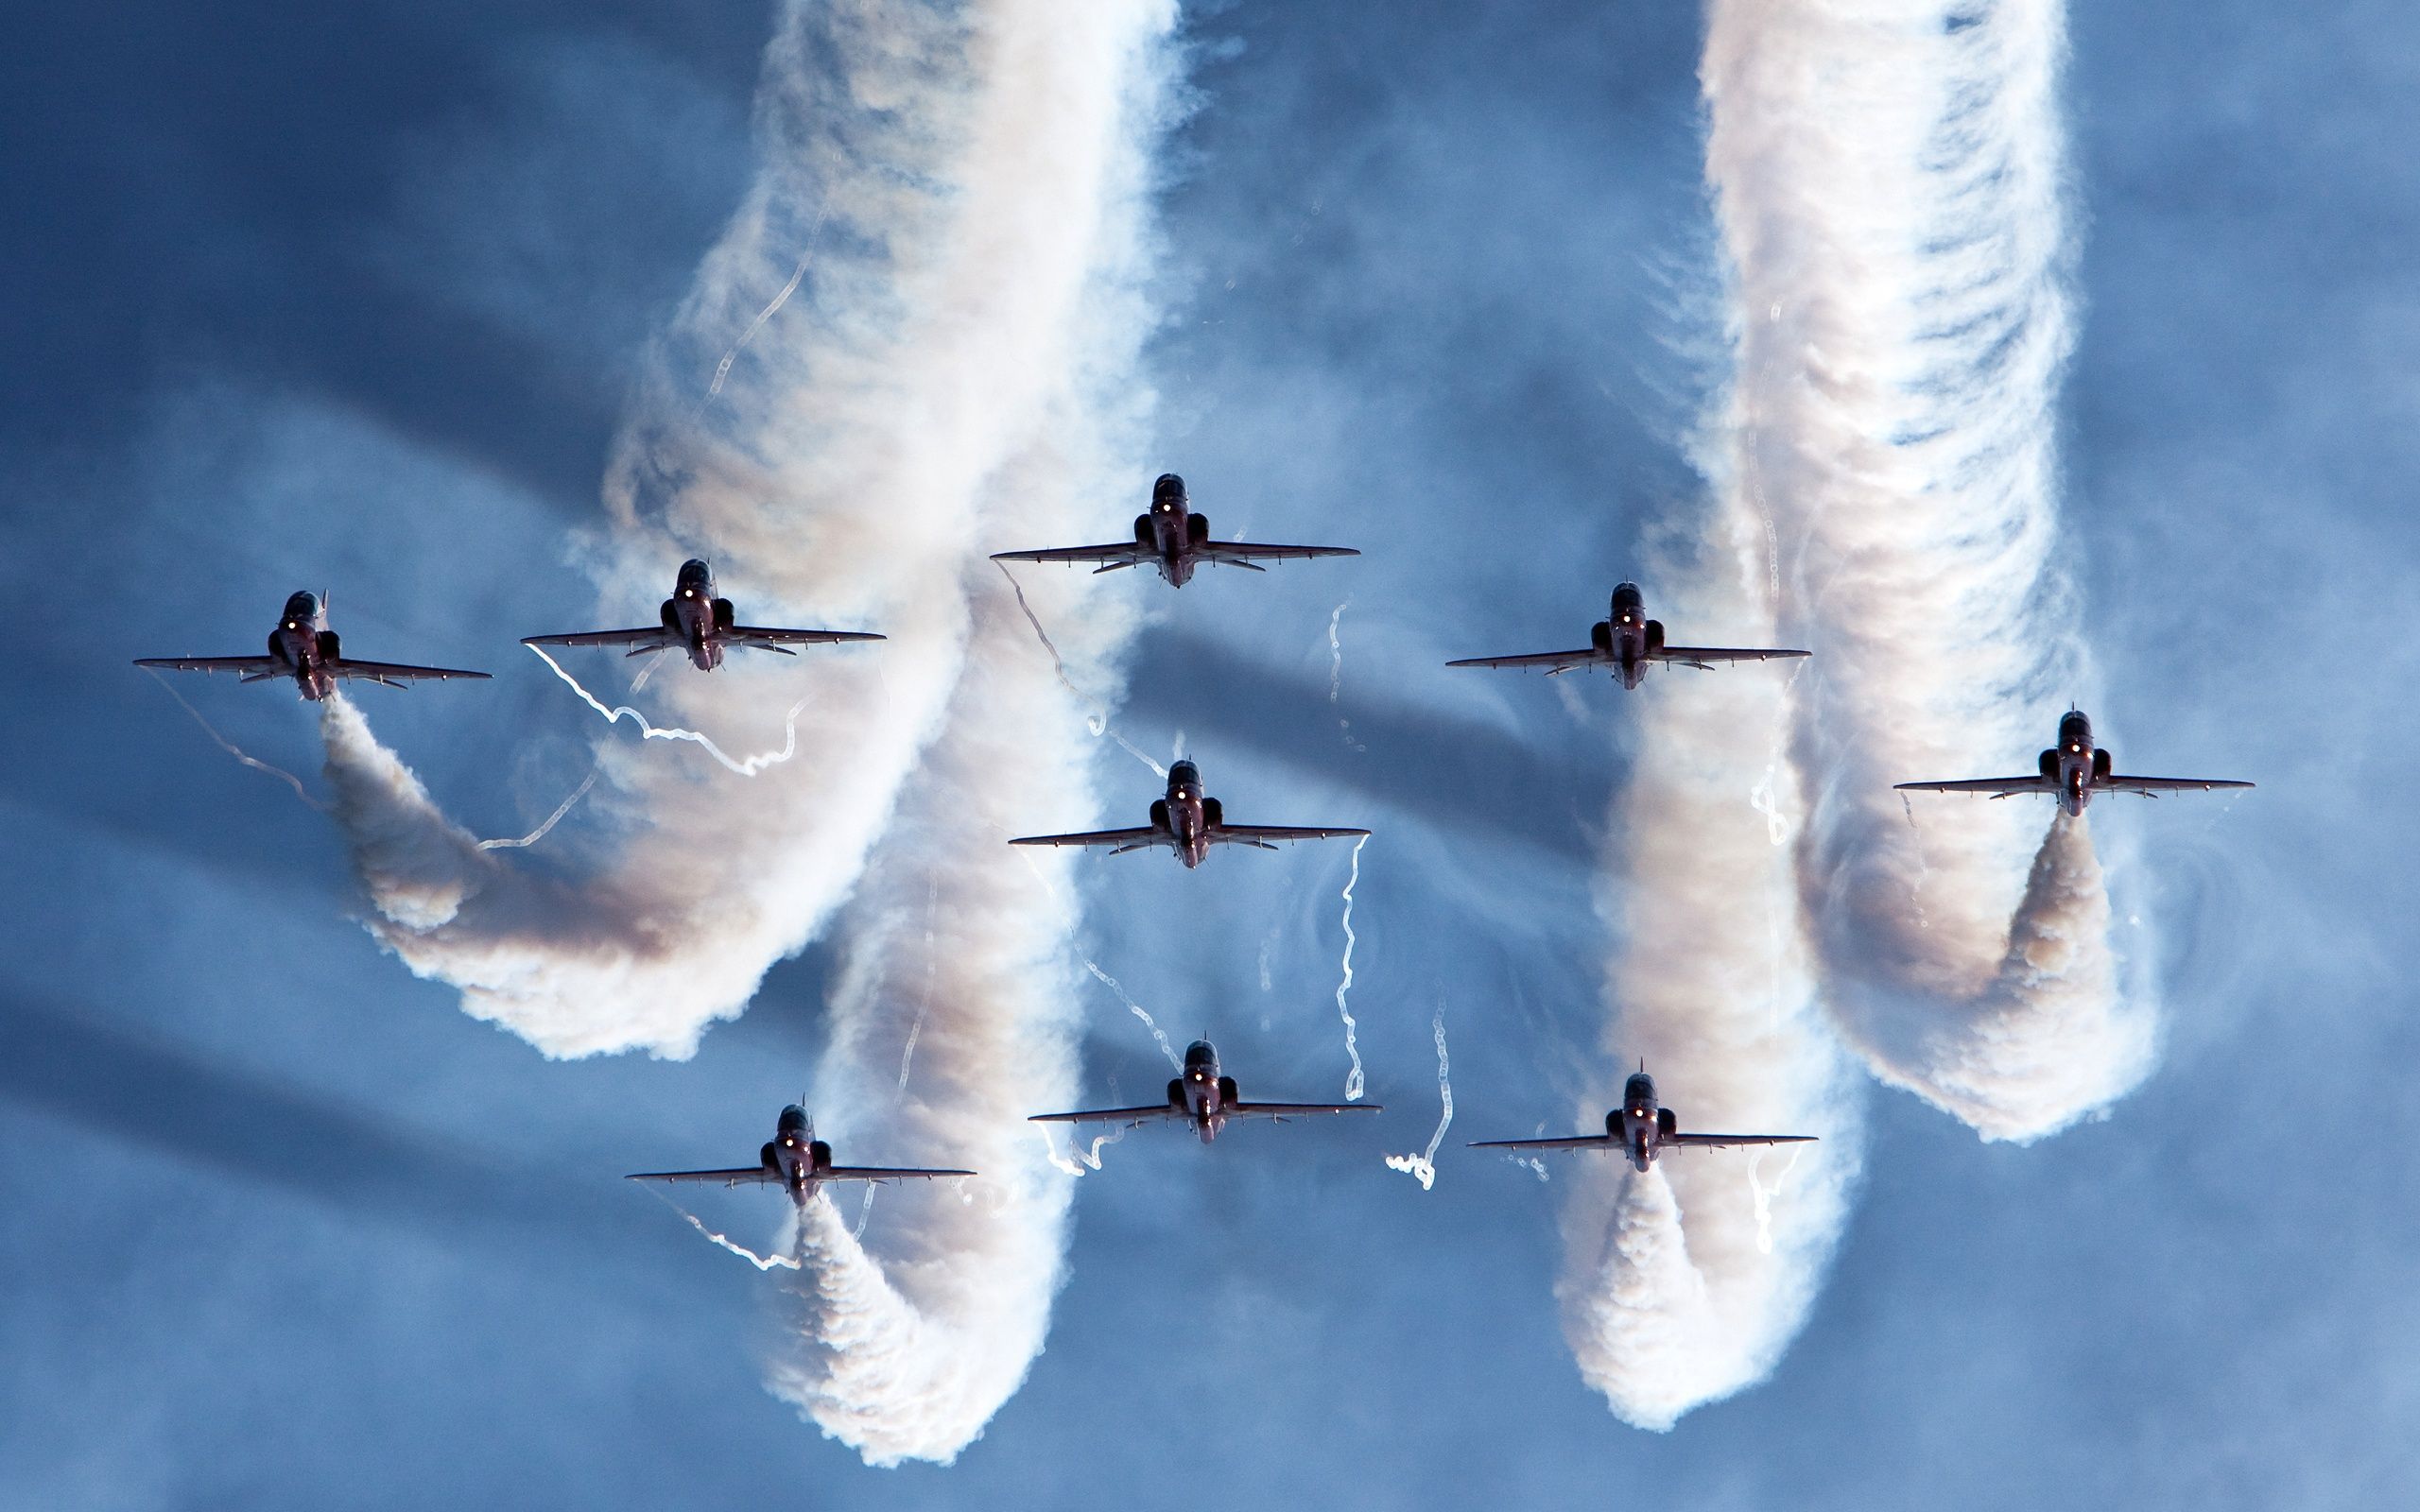 Royal Air Force Aerobatic Team Wallpaper in jpg format for free download